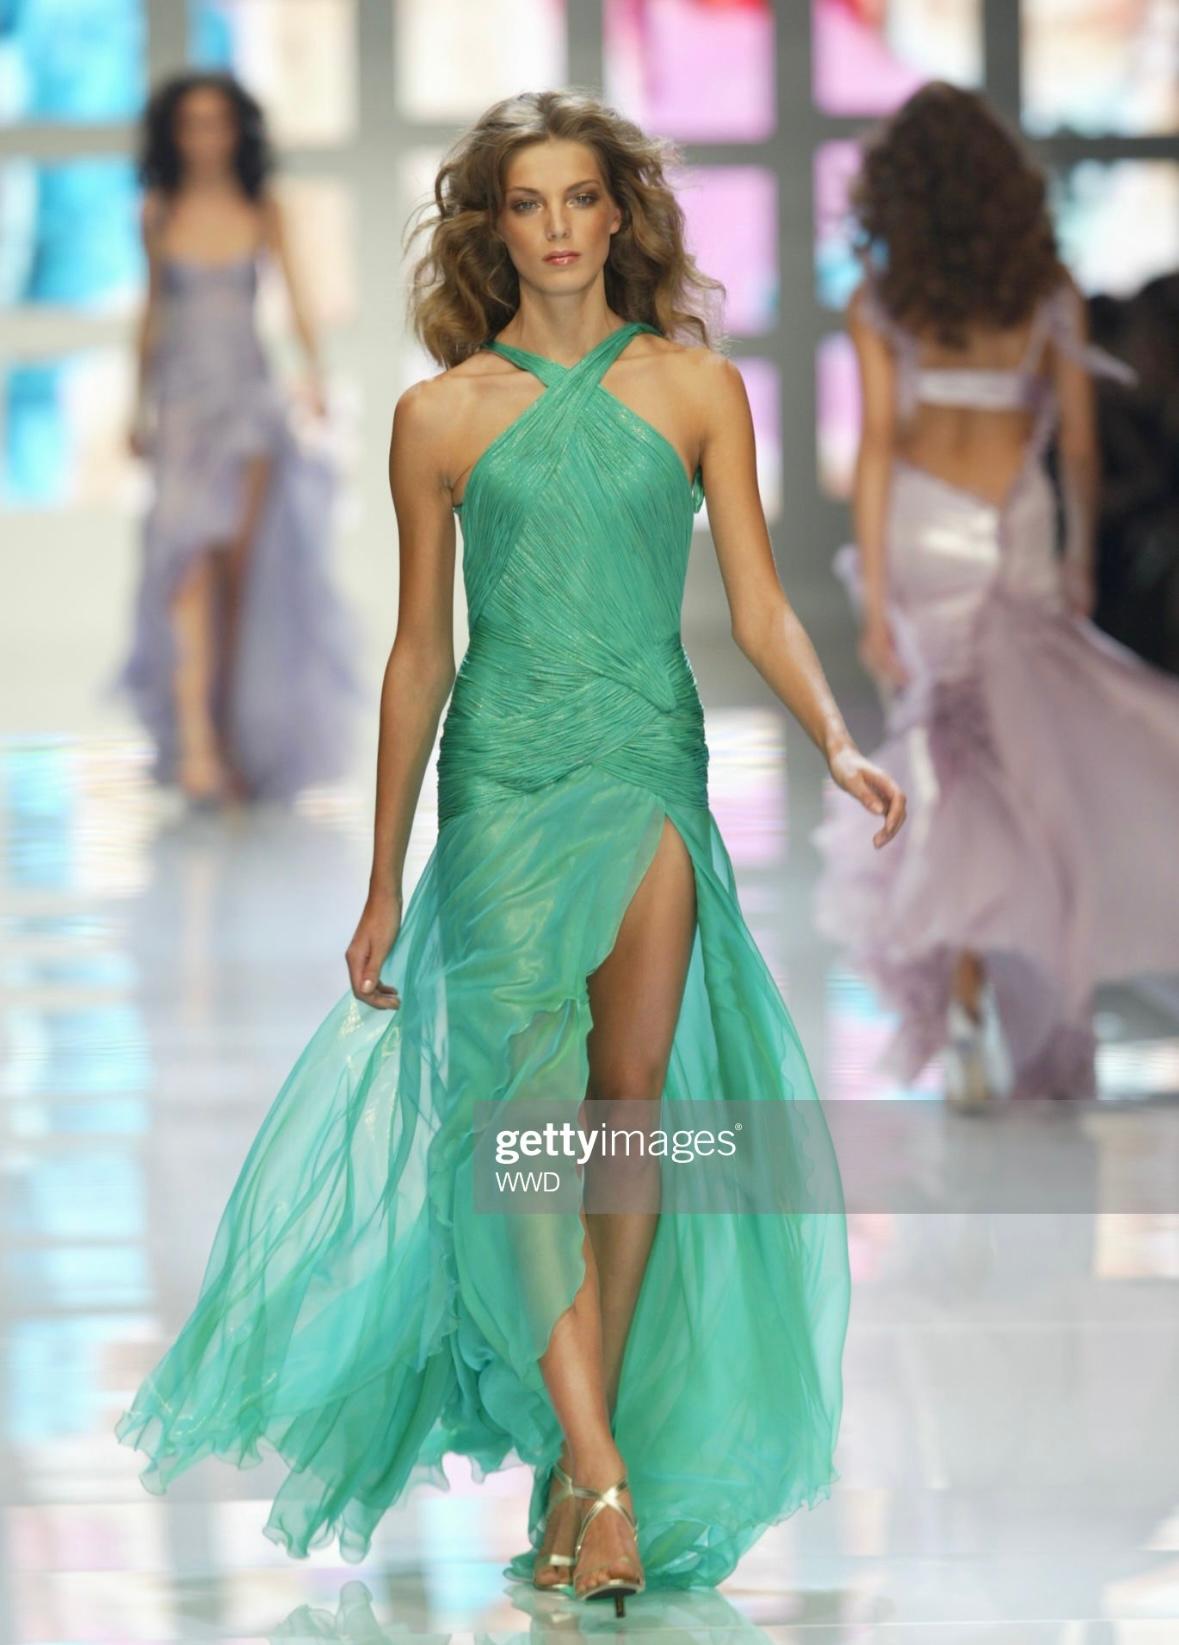 Nous vous présentons une superbe robe dos nu vert métallique Atelier Versace, créée par Donatella Versace. Issue de la collection printemps-été 2004, cette robe a fait ses débuts sur le podium du prêt-à-porter en tant que look 53, porté par Daria